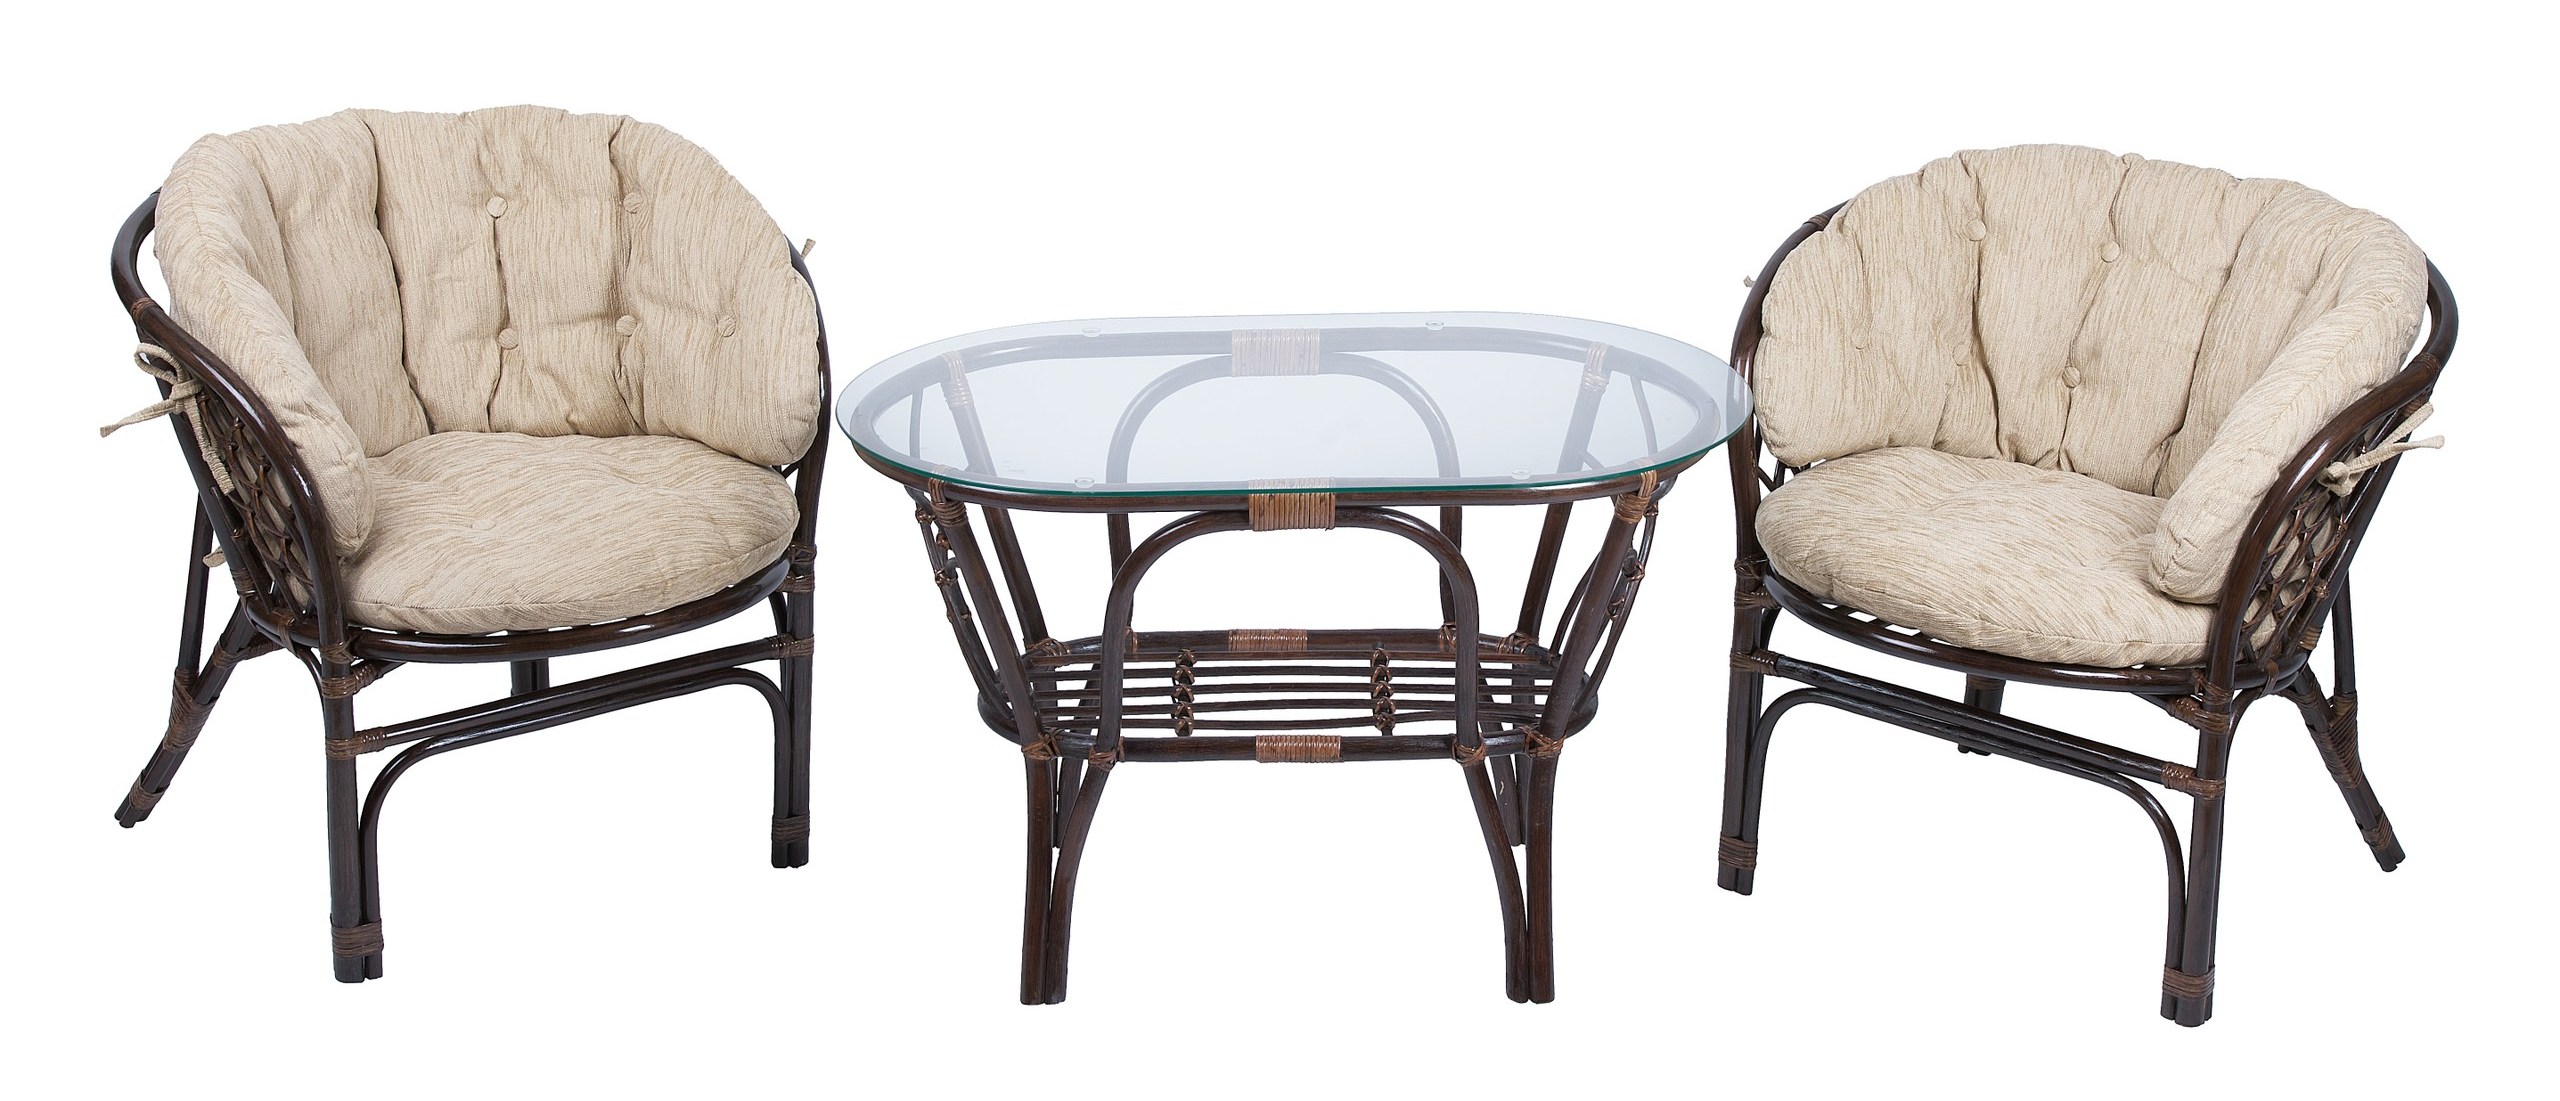 Комплект мебели из ротанга Багама дуэт с овальным столом коричневый (подушки шенилл полные светлые)